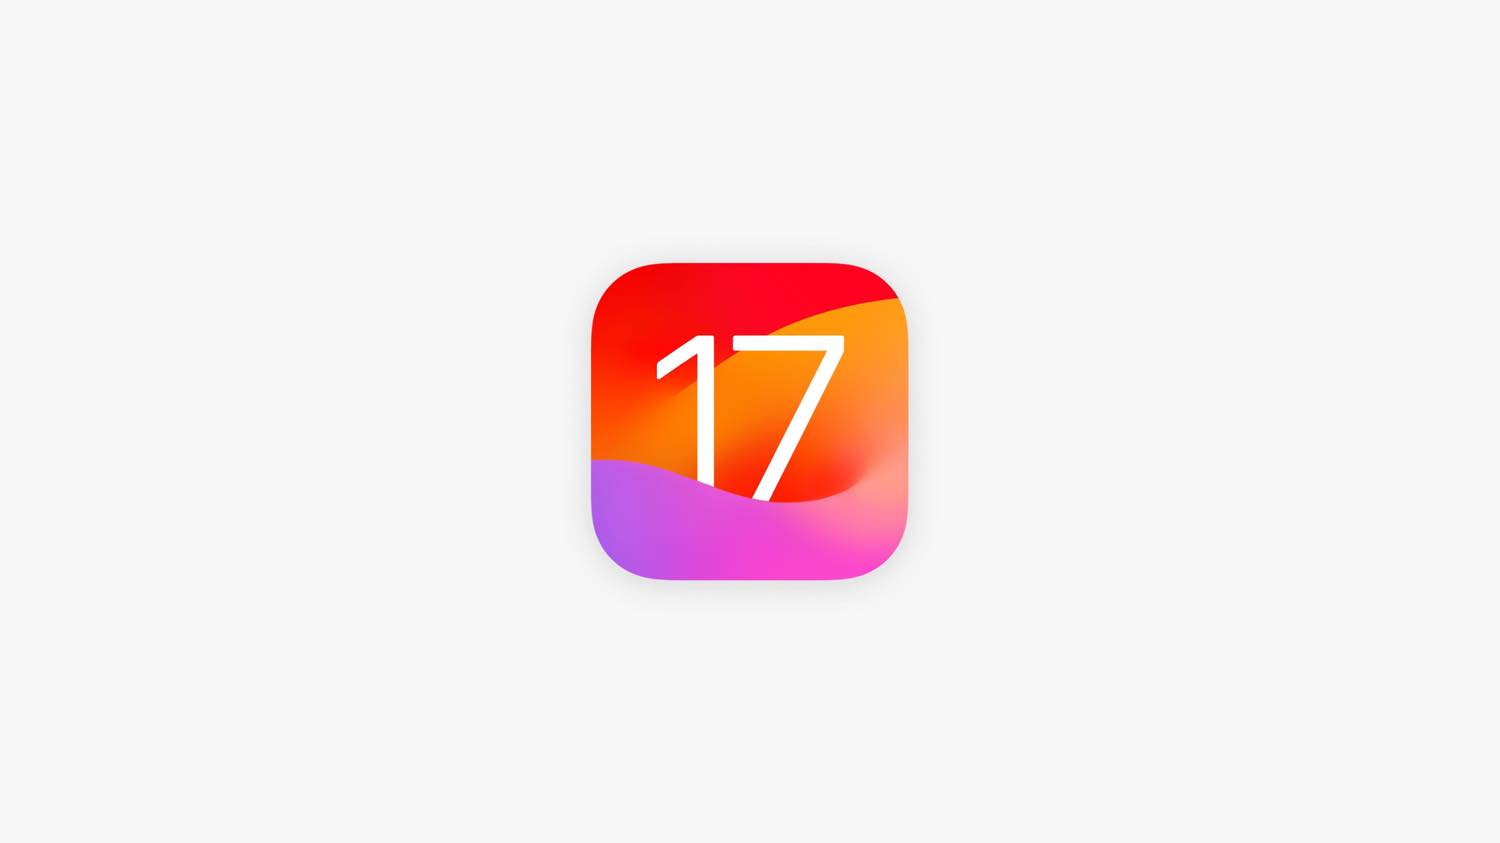 ｢iOS 17.4 beta 1｣の新機能や変更点のまとめ